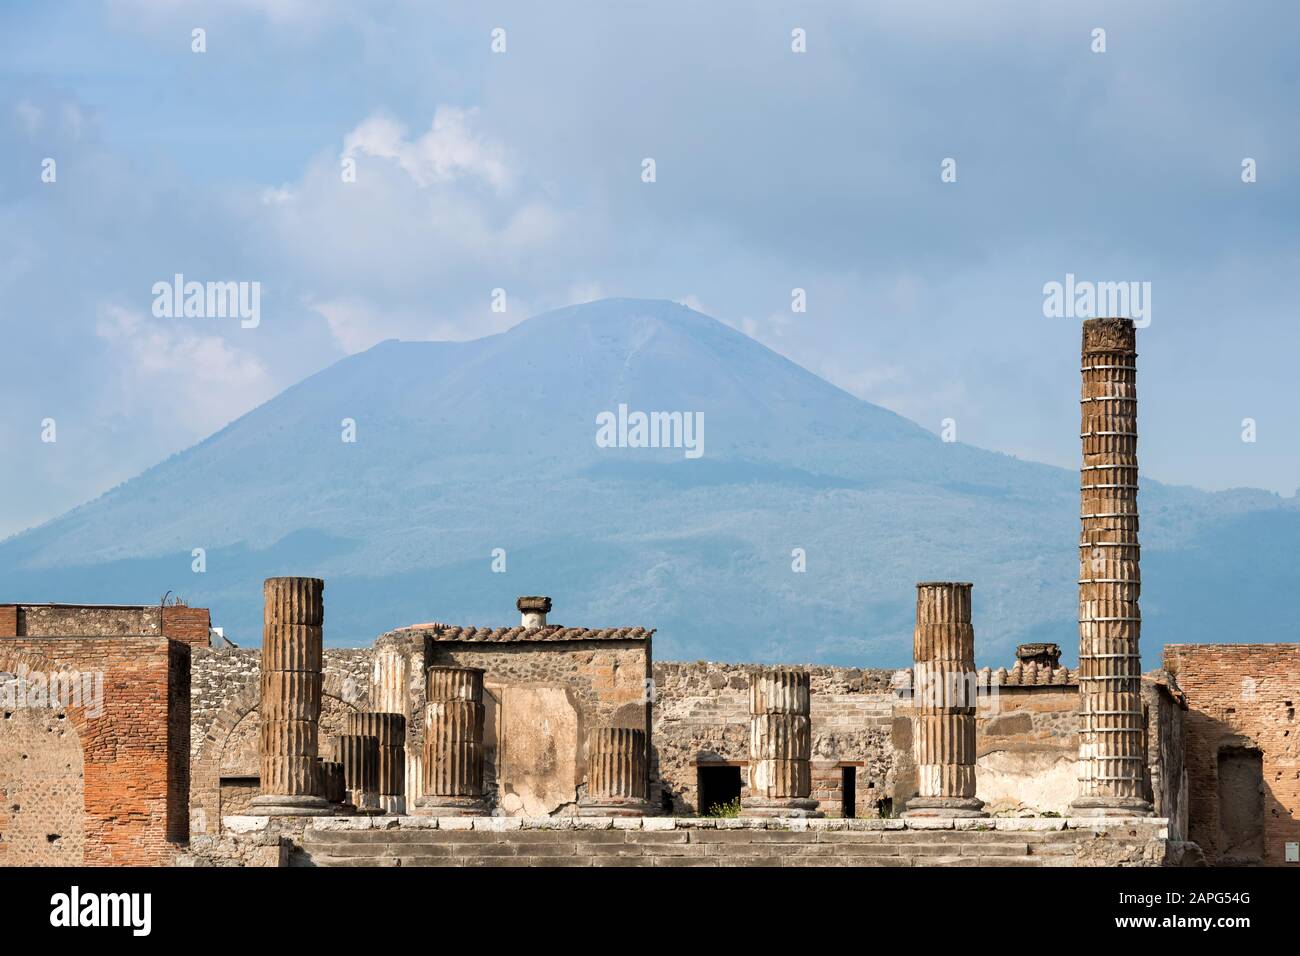 Le antiche rovine romane di Pompei, città distrutta dal vulcano vesuvio, sono iscritte nella lista del patrimonio mondiale dell'UNESCO. Foto Stock